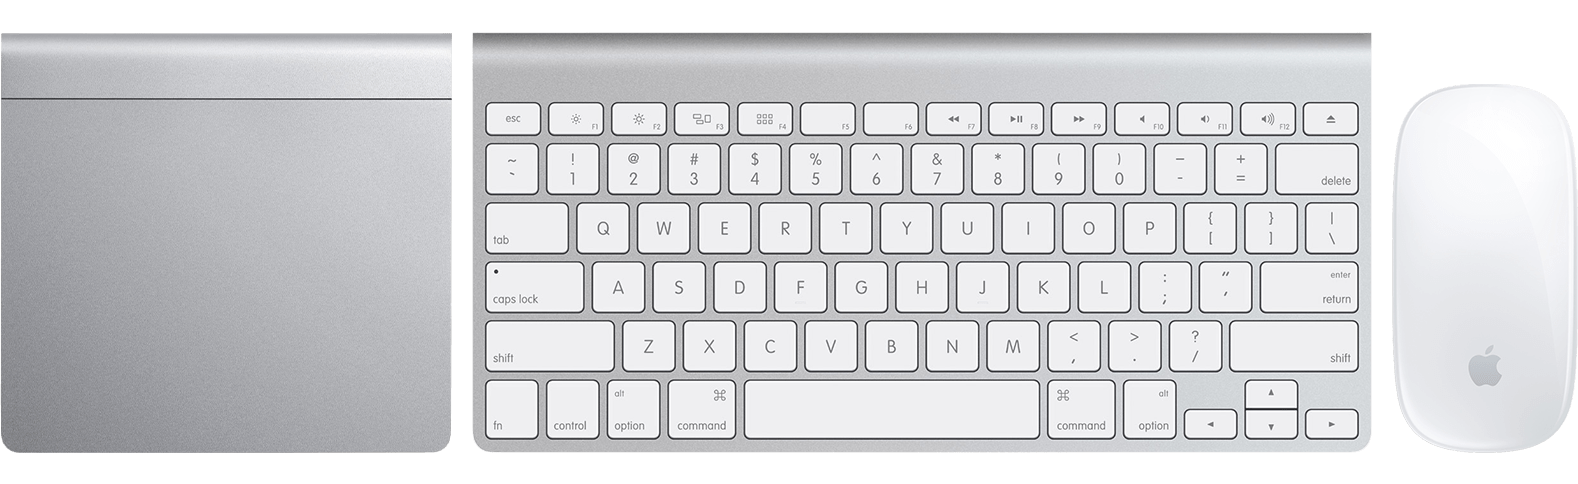 巧控板、Apple 無線鍵盤和巧控滑鼠的頂部視圖